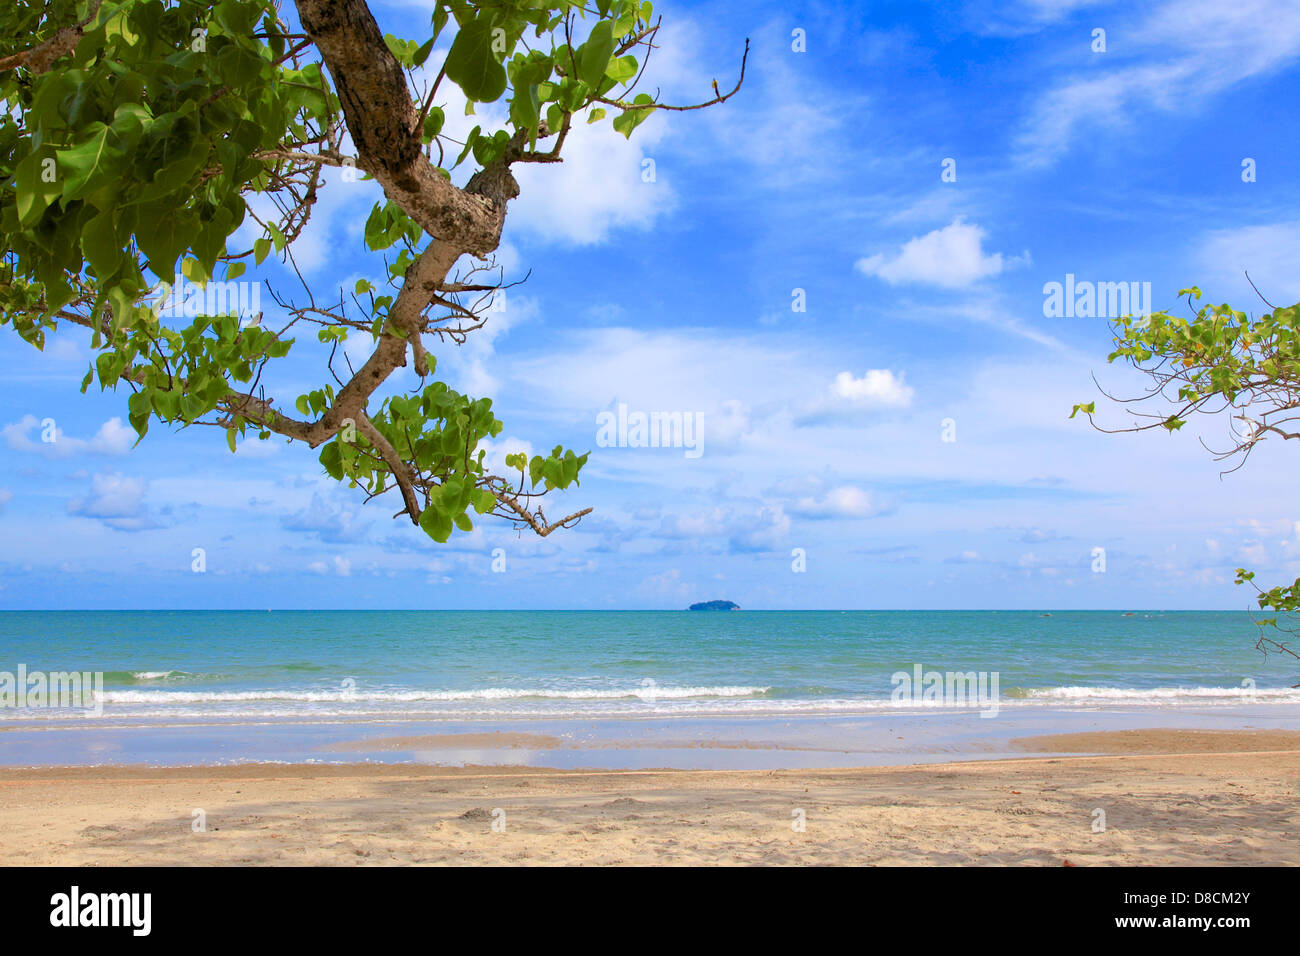 Tropical beach in Thailand Stock Photo